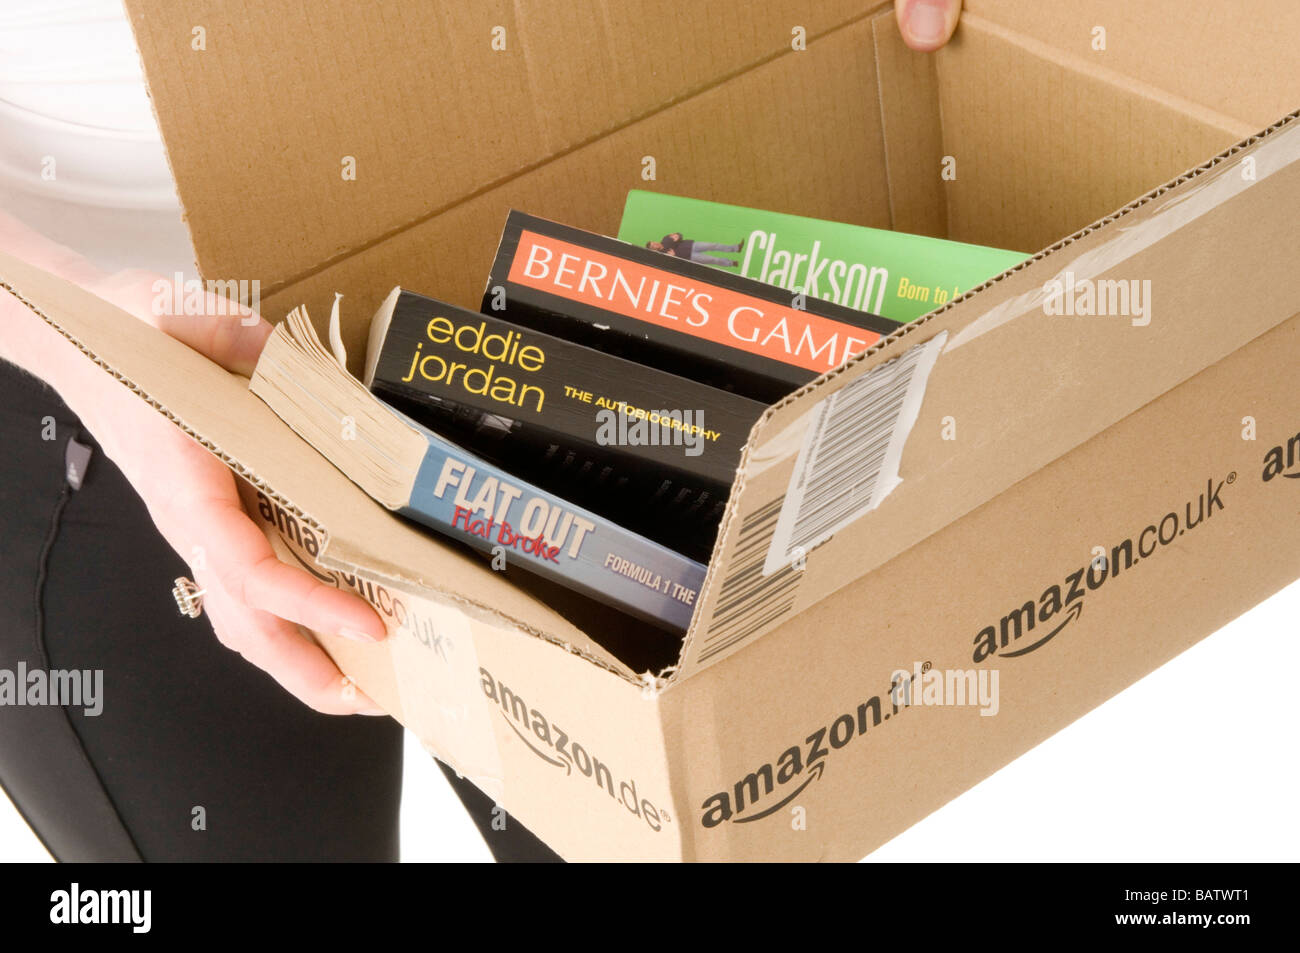 Amazon Online Shop Stockfotos und -bilder Kaufen - Alamy